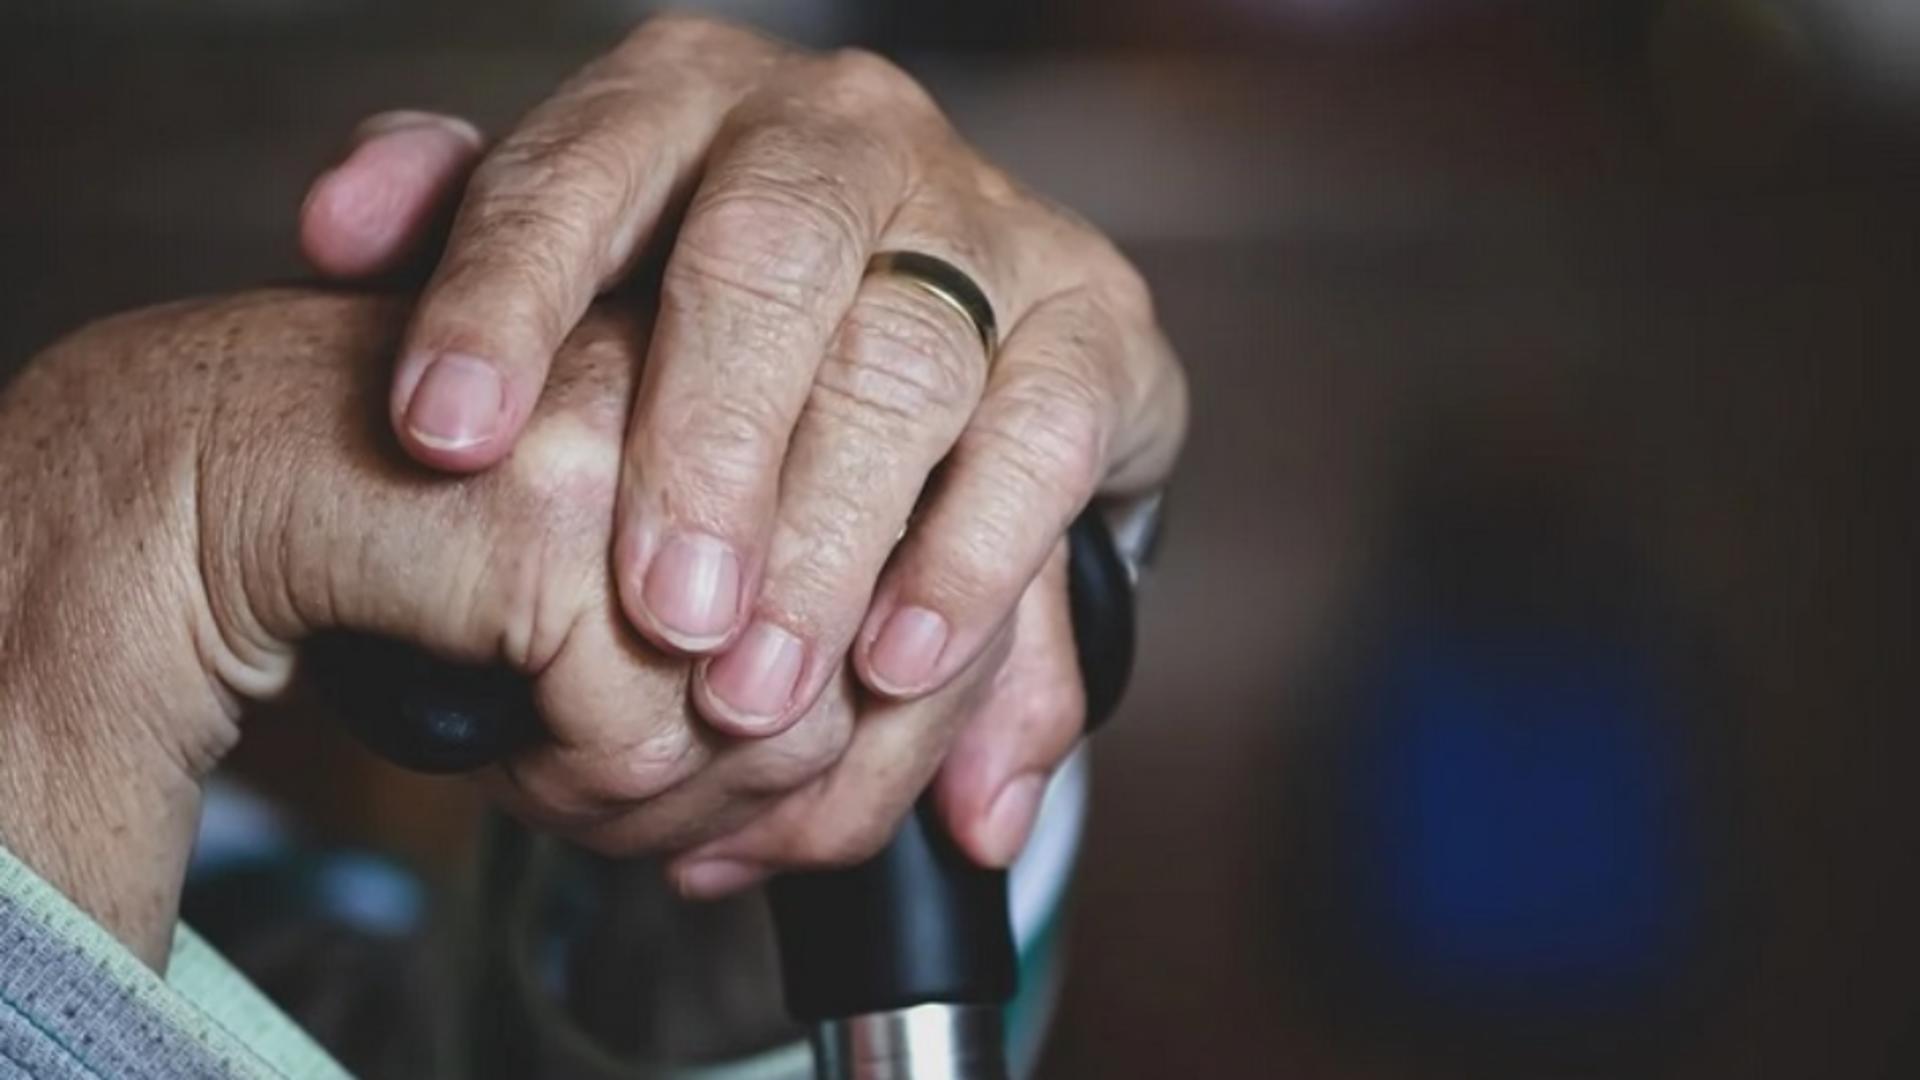 Statele Unite au aprobat primul medicament care încetinește progresia bolii Alzheimer